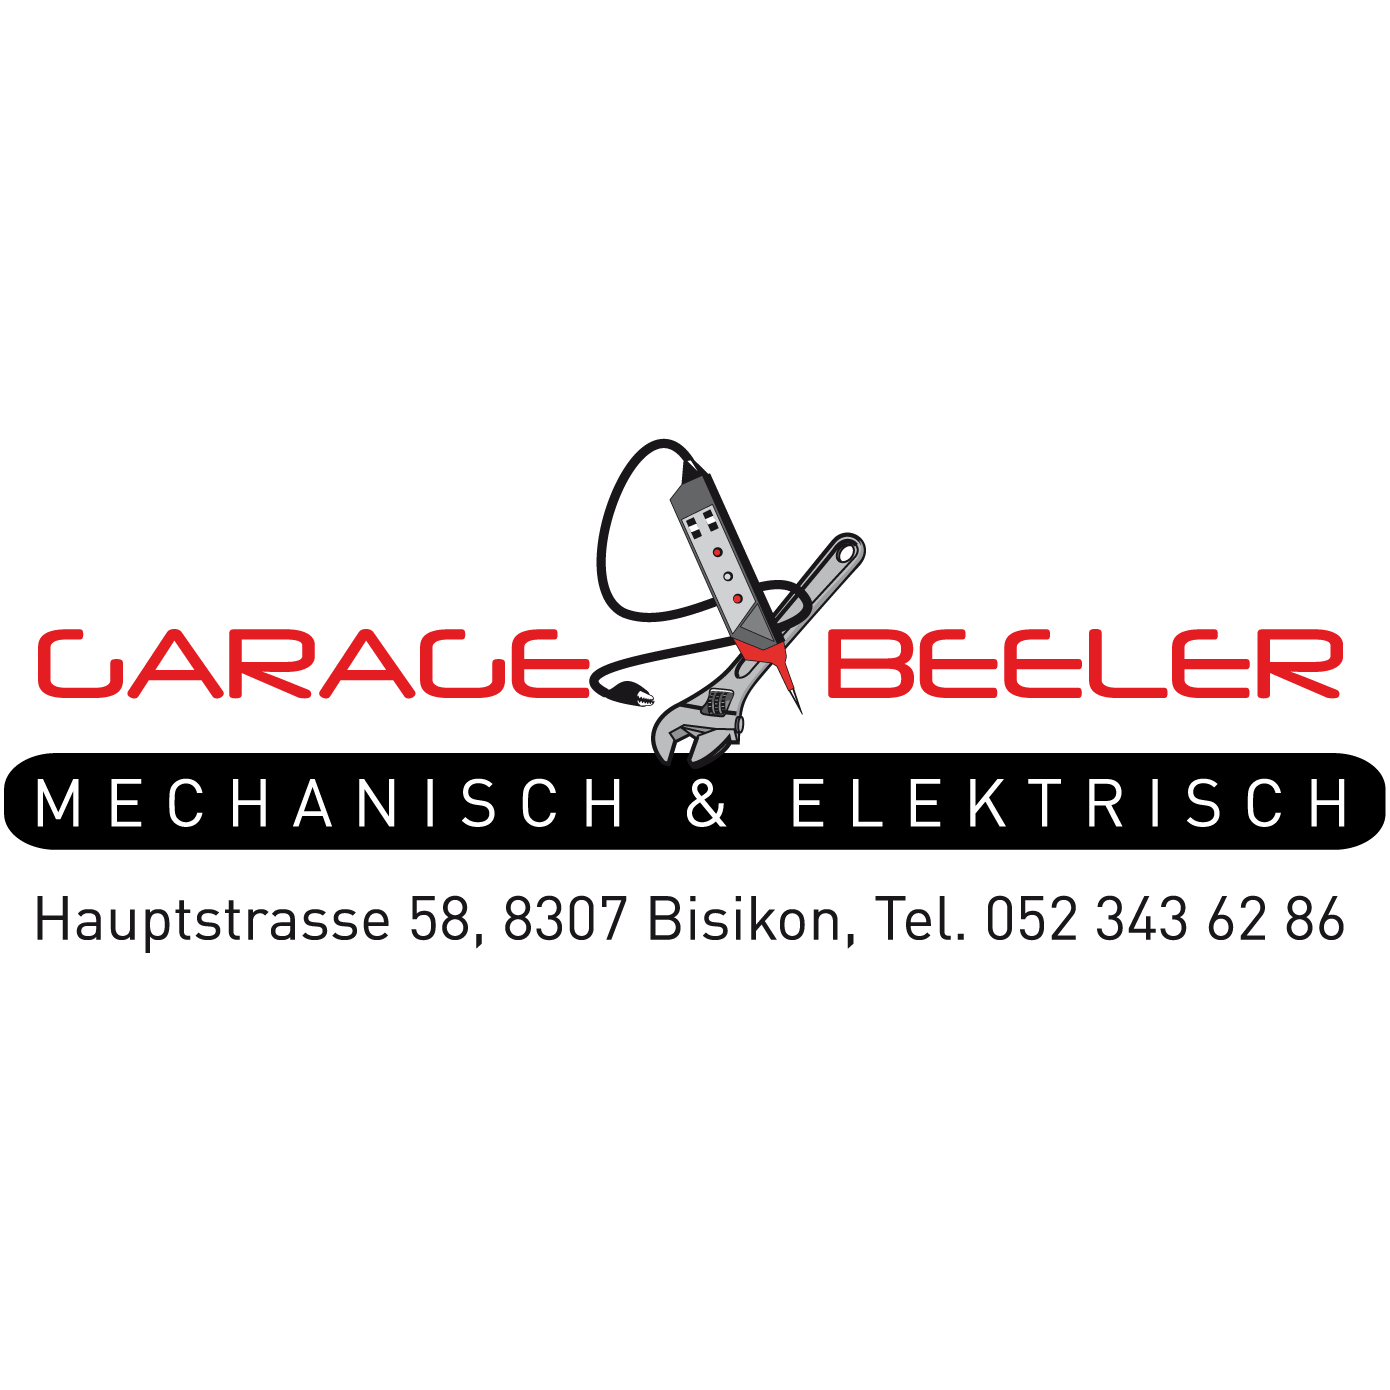 Garage Beeler Logo